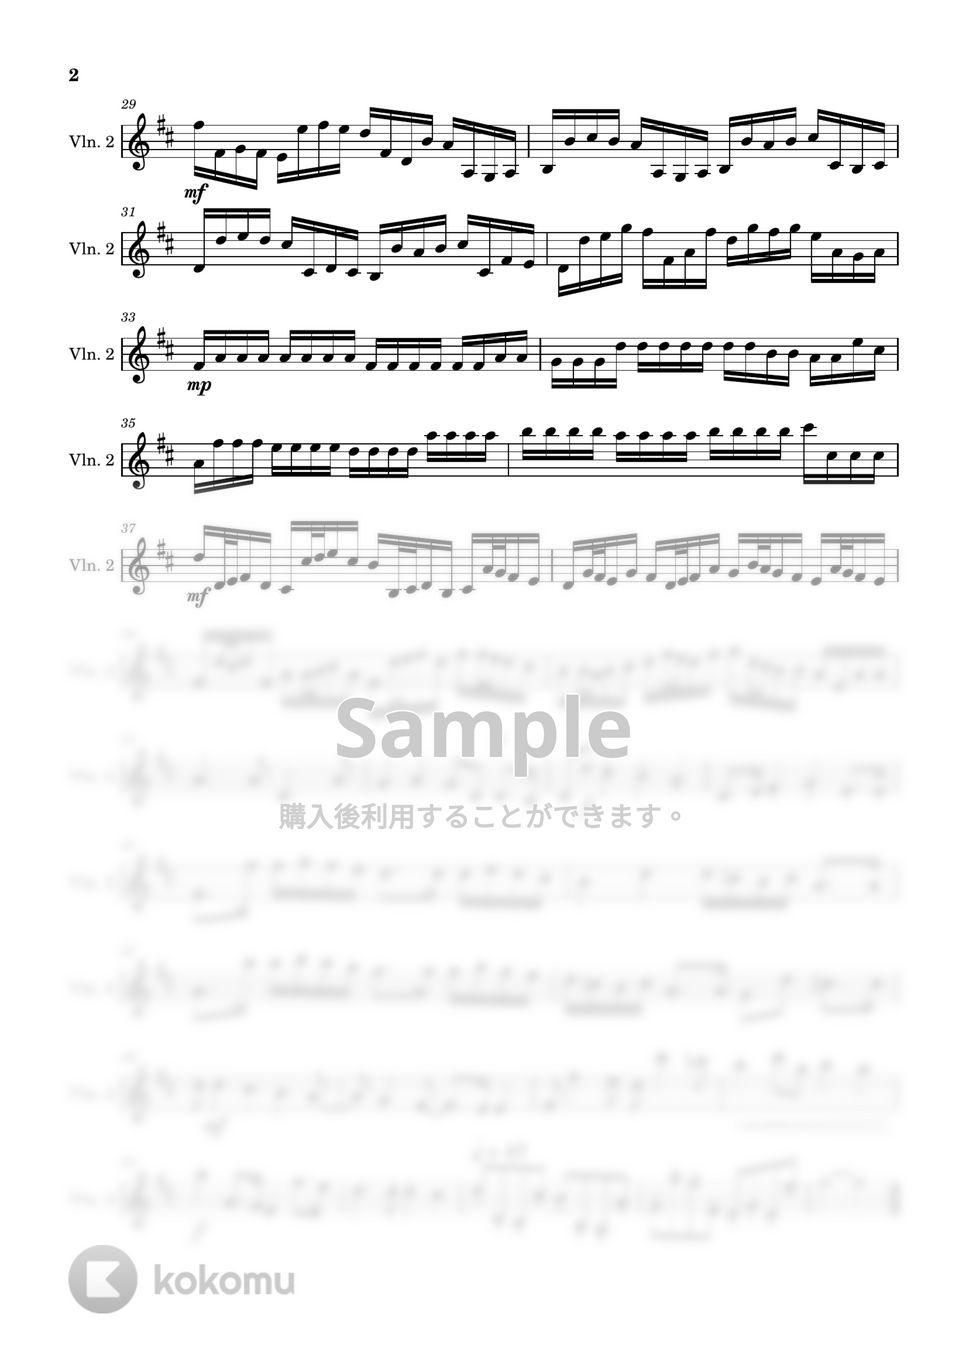 パッハルベル - カノン (ヴァイオリン2-弦楽四重奏) by Cellotto